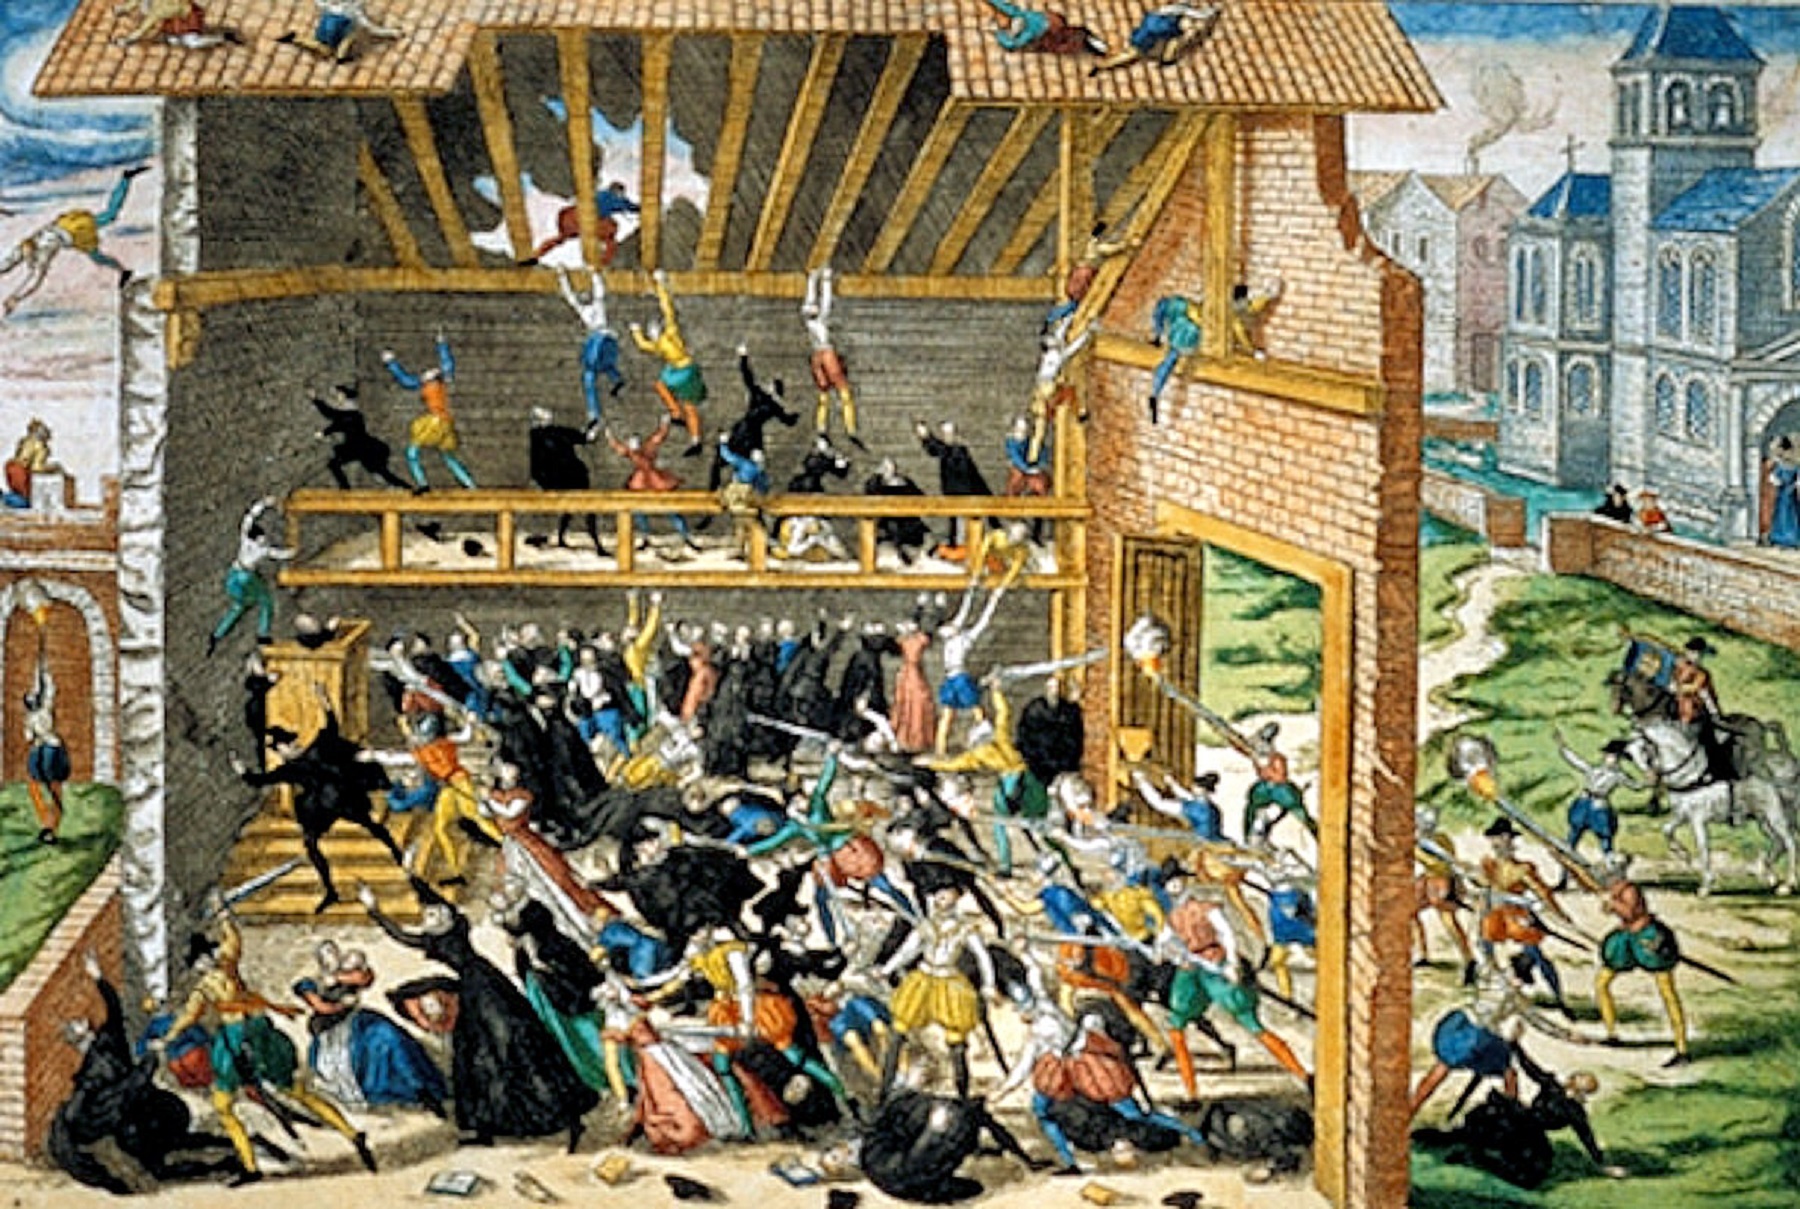 Tableau représentant le&nbsp;massacre de Wassy, en&nbsp;mars 1562, peint par Franz Hogenberg, fin XVIe siècle.&nbsp;Le massacre de Wassy se déroule après l'édit de janvier 1562, par lequel le roi autorise&nbsp;les protestants à se rassembler à l'extérieur des villes pour y célébrer leur culte. L'assemblée se tient dans la ville, elle est attaquée par l'escorte&nbsp;armée du duc François de Guise. ©&nbsp;Wikimedia Commons, domaine public.